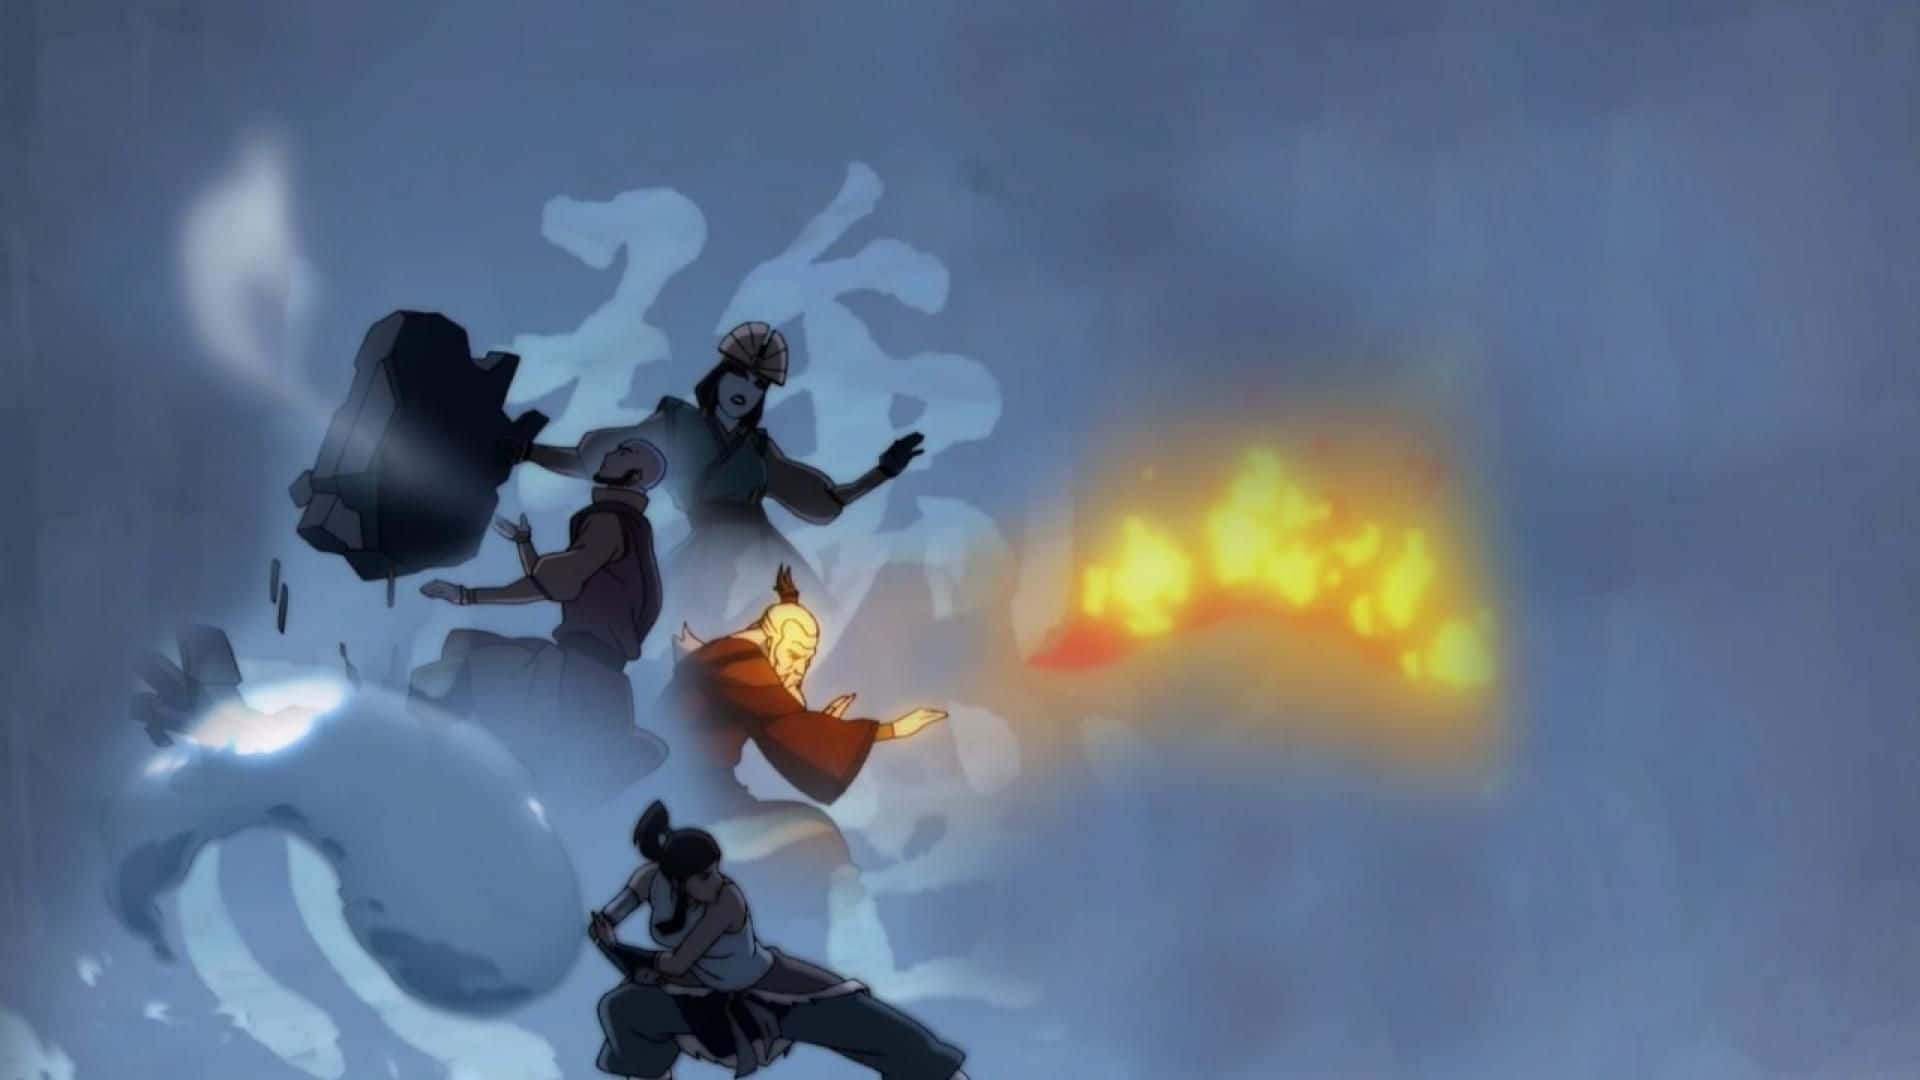 Korra udspiller sin fulde potentiale og Avatar magt for at beskytte sit kongerige. Wallpaper